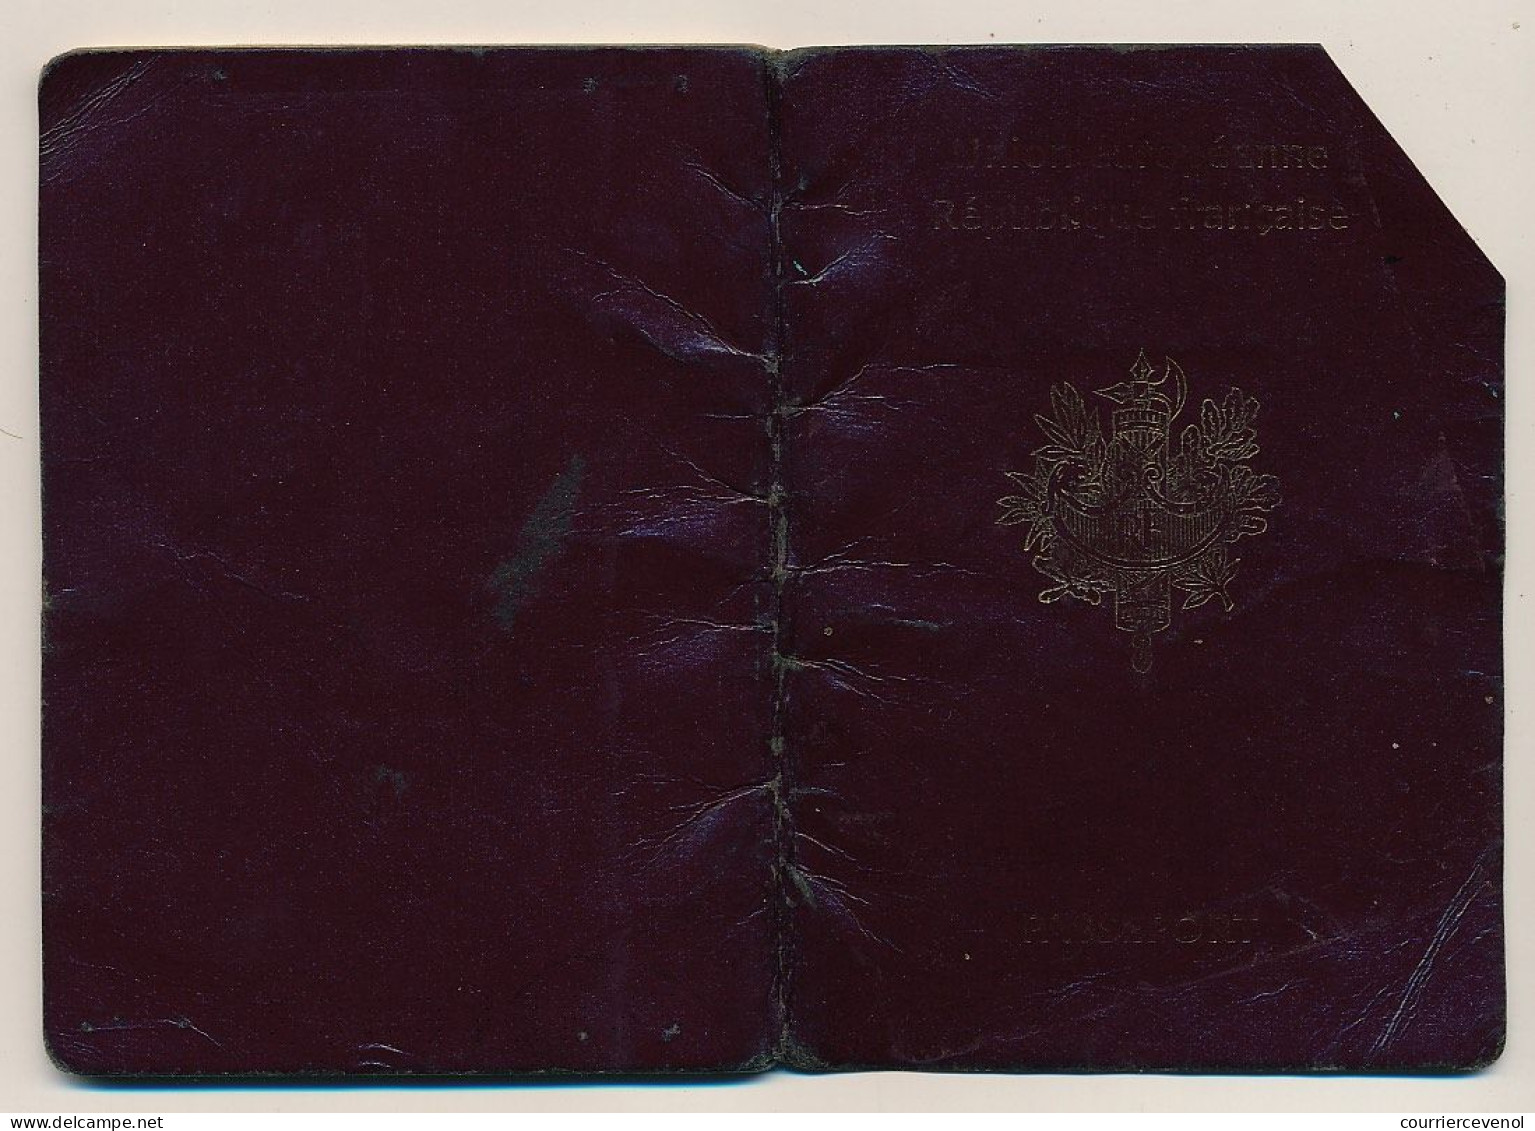 FRANCE - Passeport D'un Marseillais établi à PEKIN (Chine) - Très Nombreux Visas Viet-Nam, Malaisie, Mongolie...2007/08 - Covers & Documents